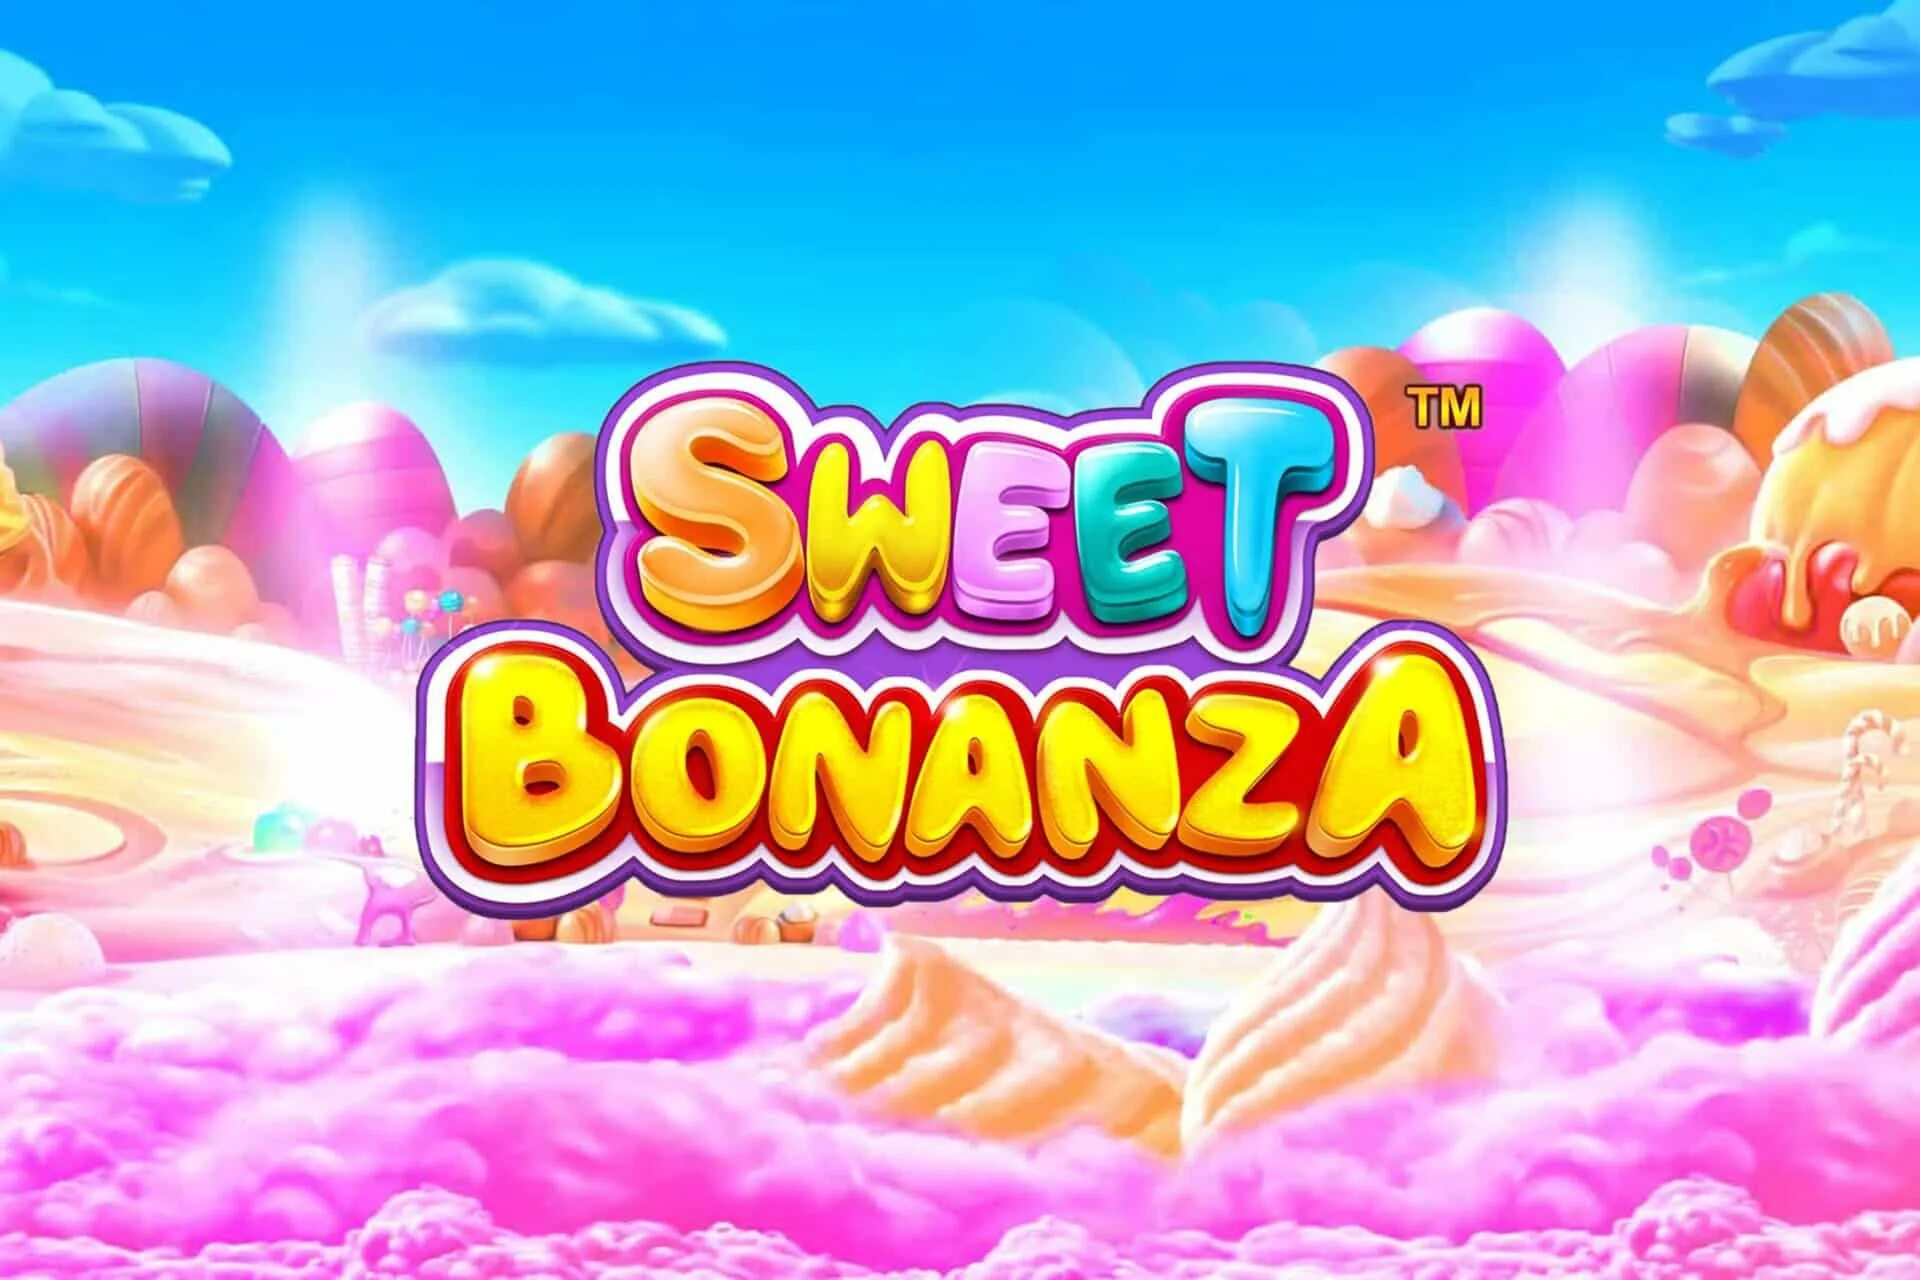 Sweet sweetiebonanza com. Sweet Bonanza. Бонанза слот. Игра Sweet Bonanza. Слот Свит Бонанза.